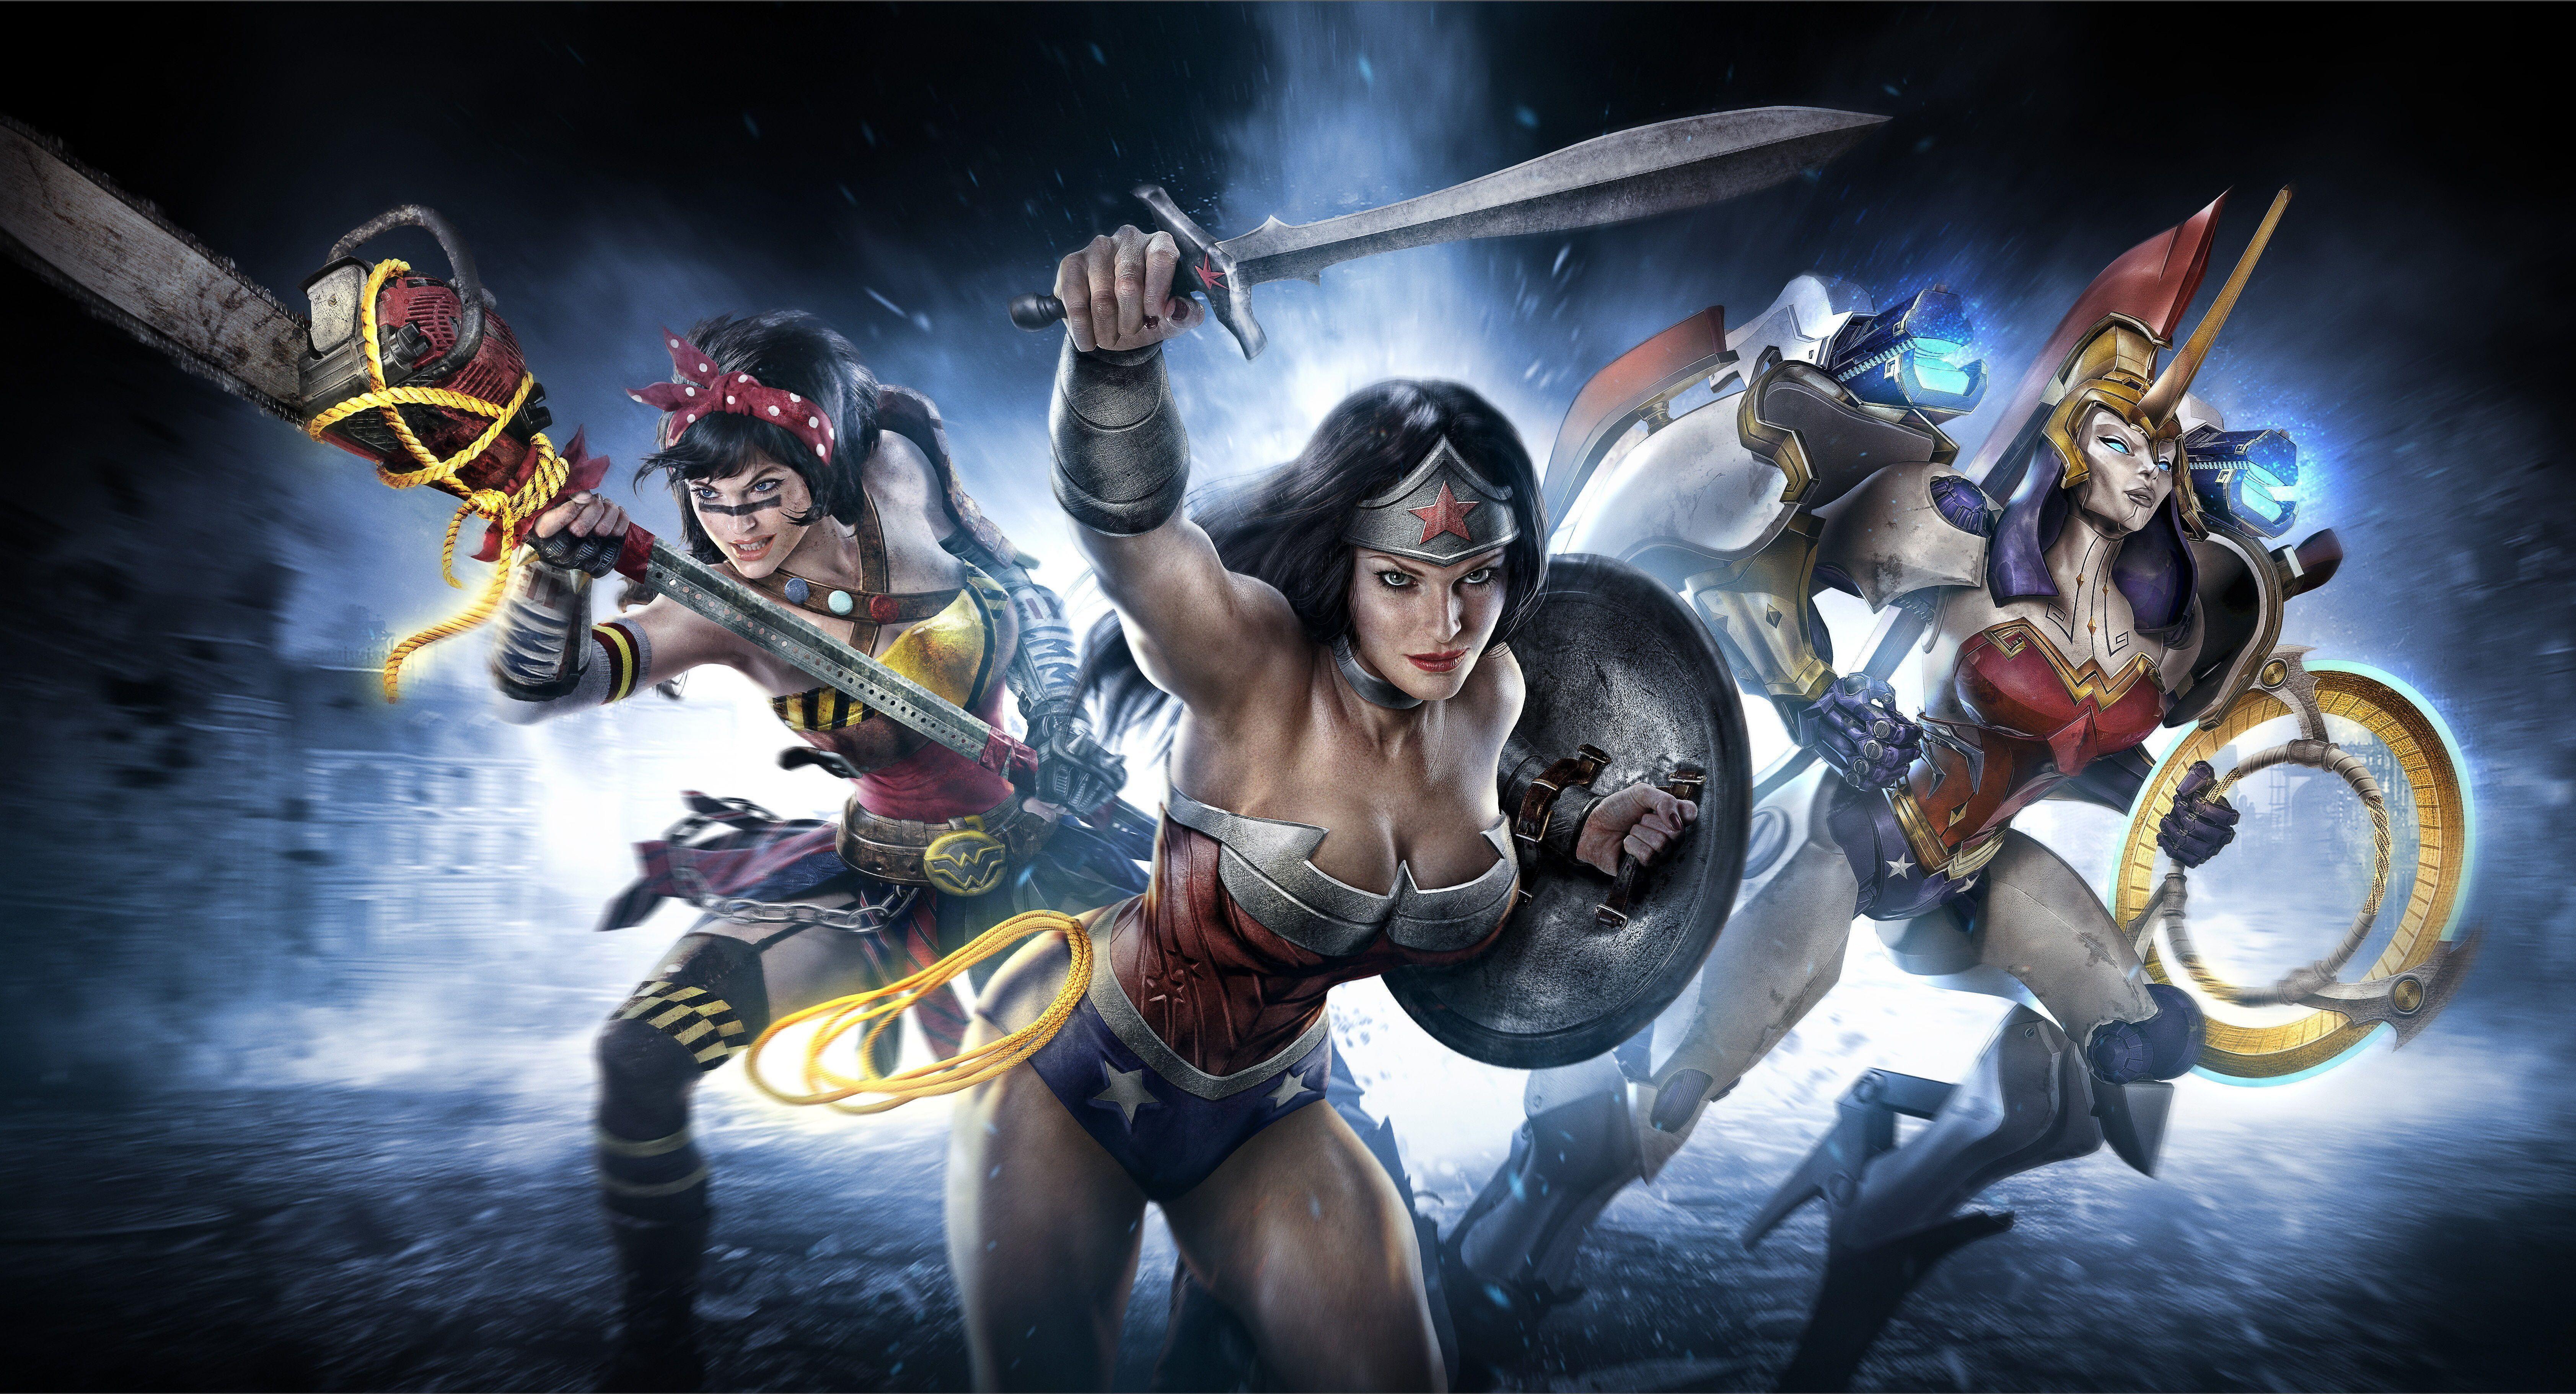 Wonder Woman Infinite Crisis game comics comic wallpaperx3643